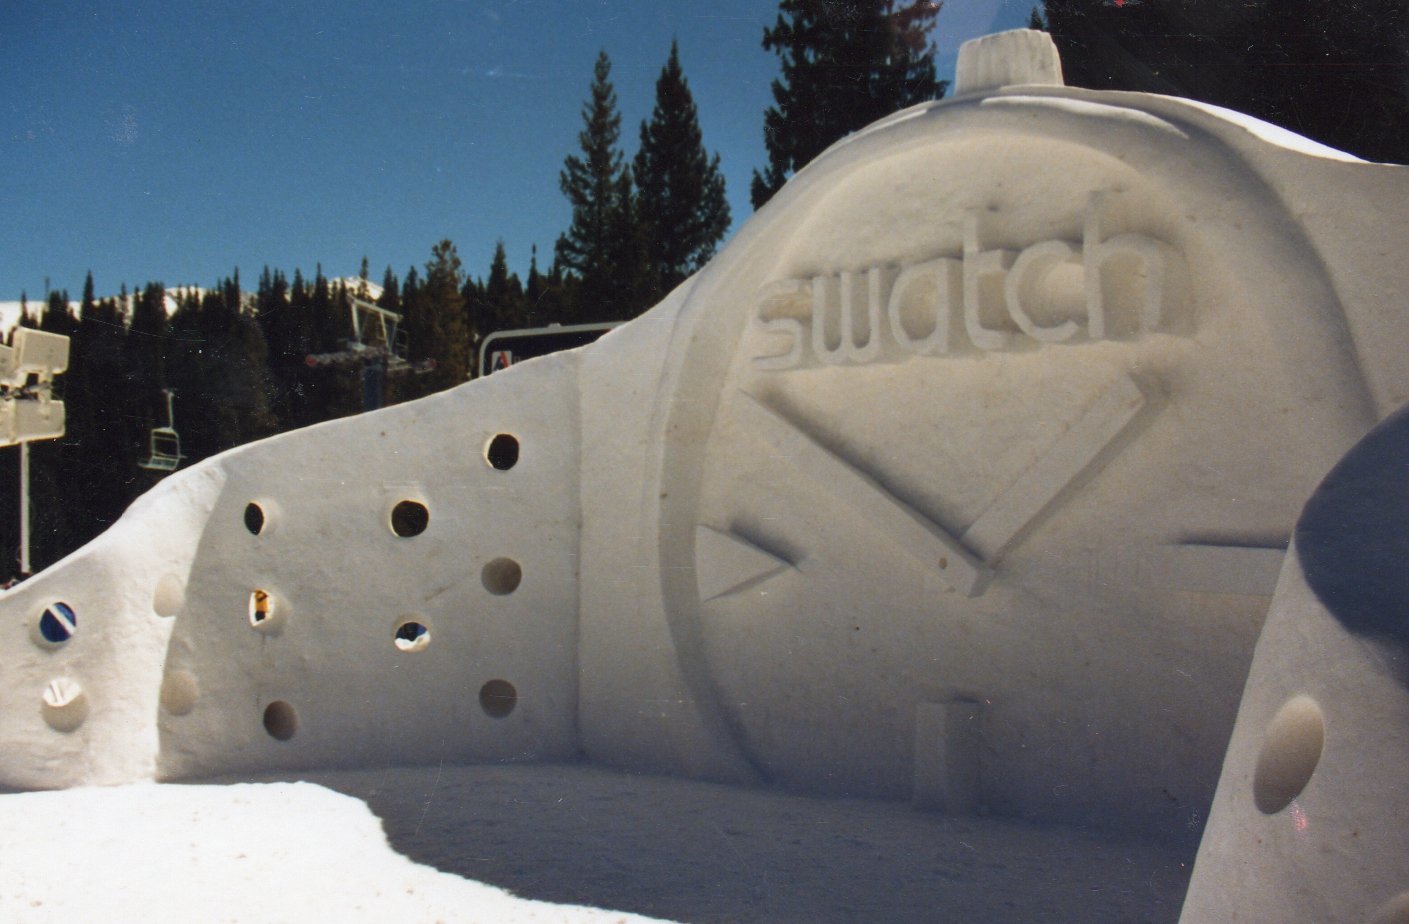 Team Breckenridge Swatch Snow Sculpture